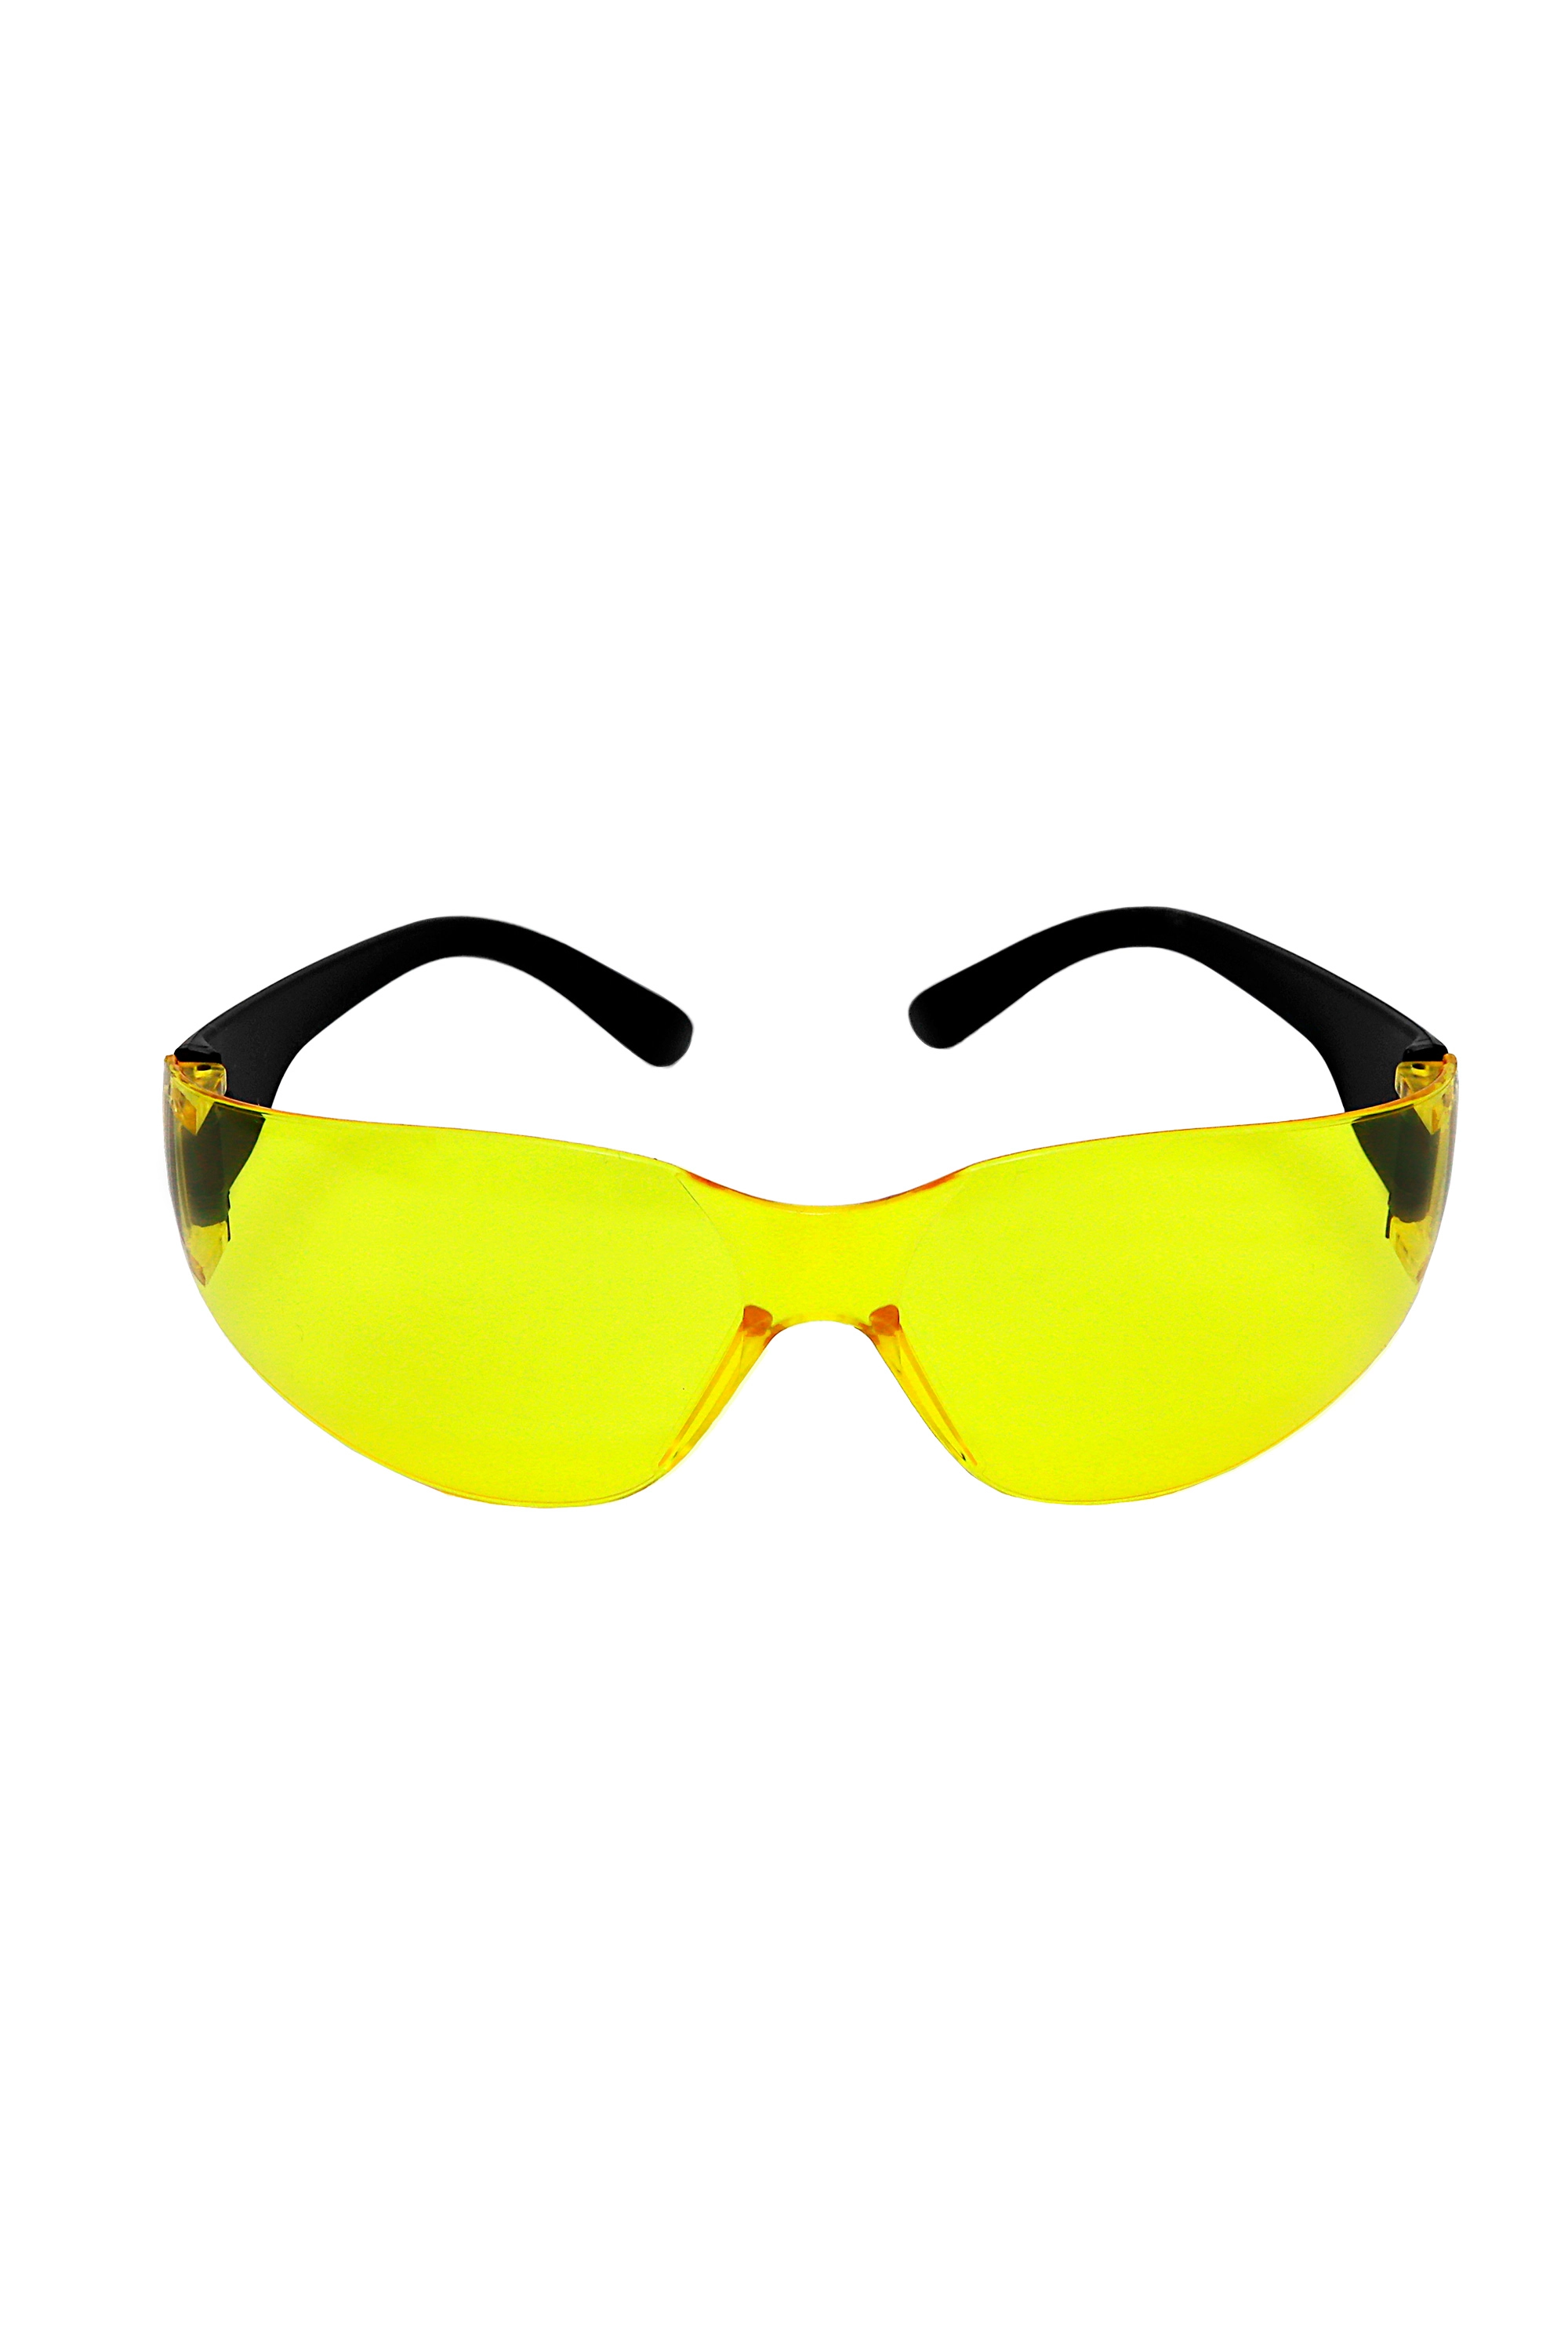 Очки открытые 'Классик' желтые с покрытием